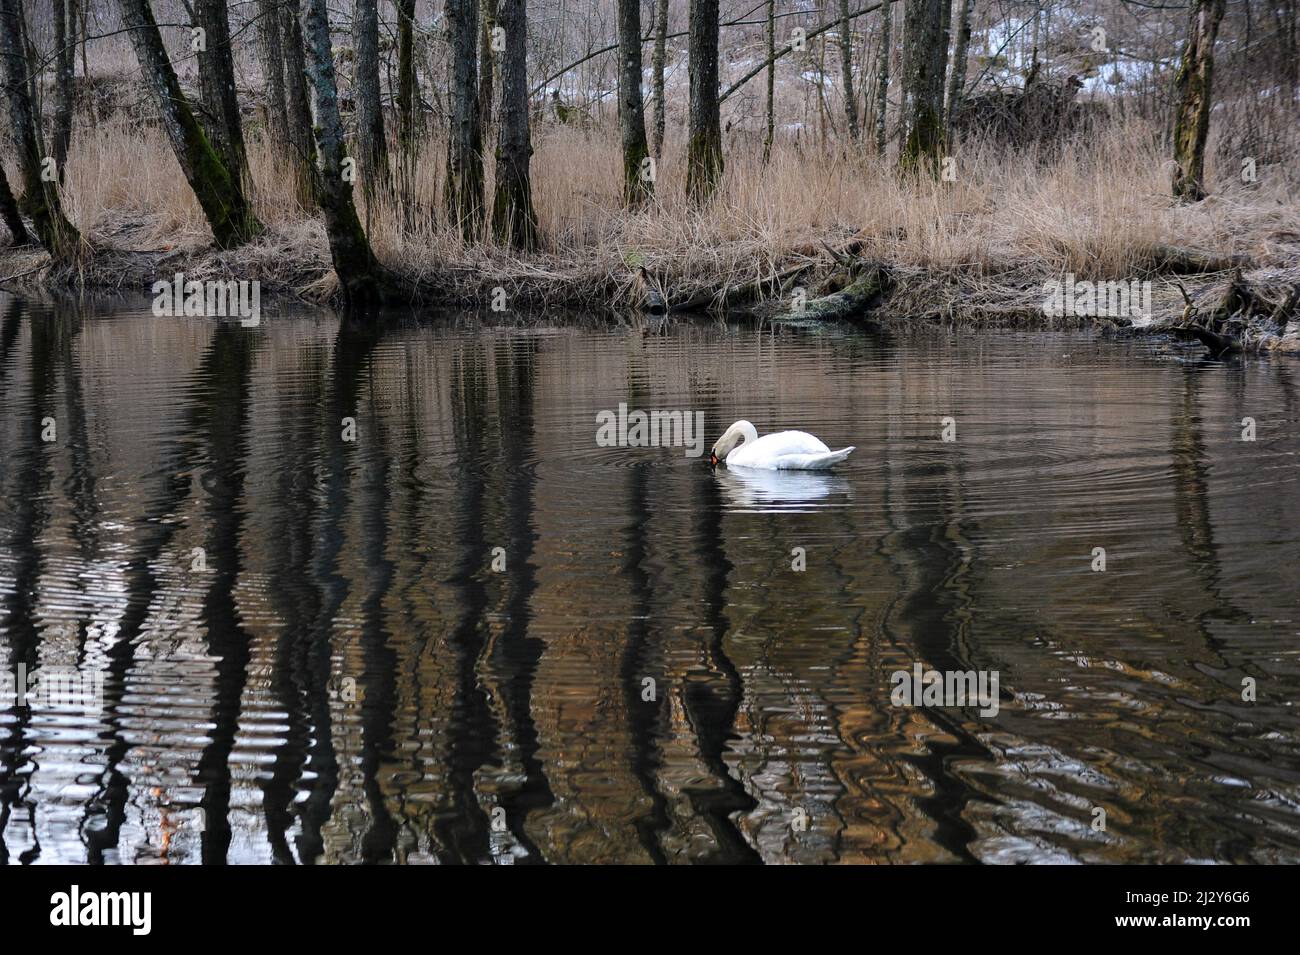 Solo cigno nuotare e mangiare nel lago tranquillo in primavera. Foto Stock